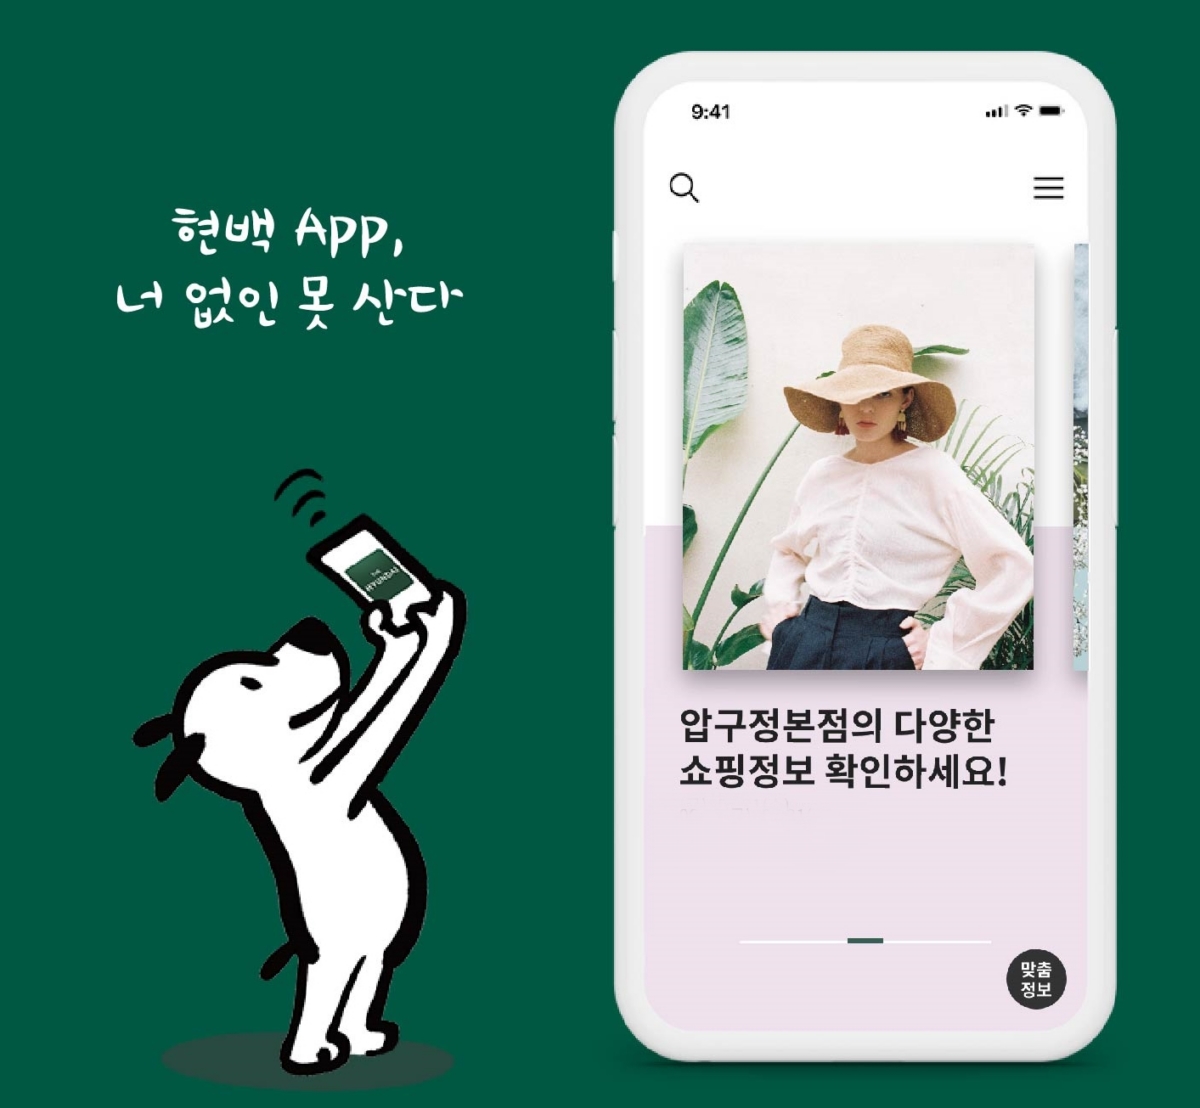 현대百 모바일 앱, `똑똑한 쇼핑도우미`로 변신…"맞춤형 정보 제공"